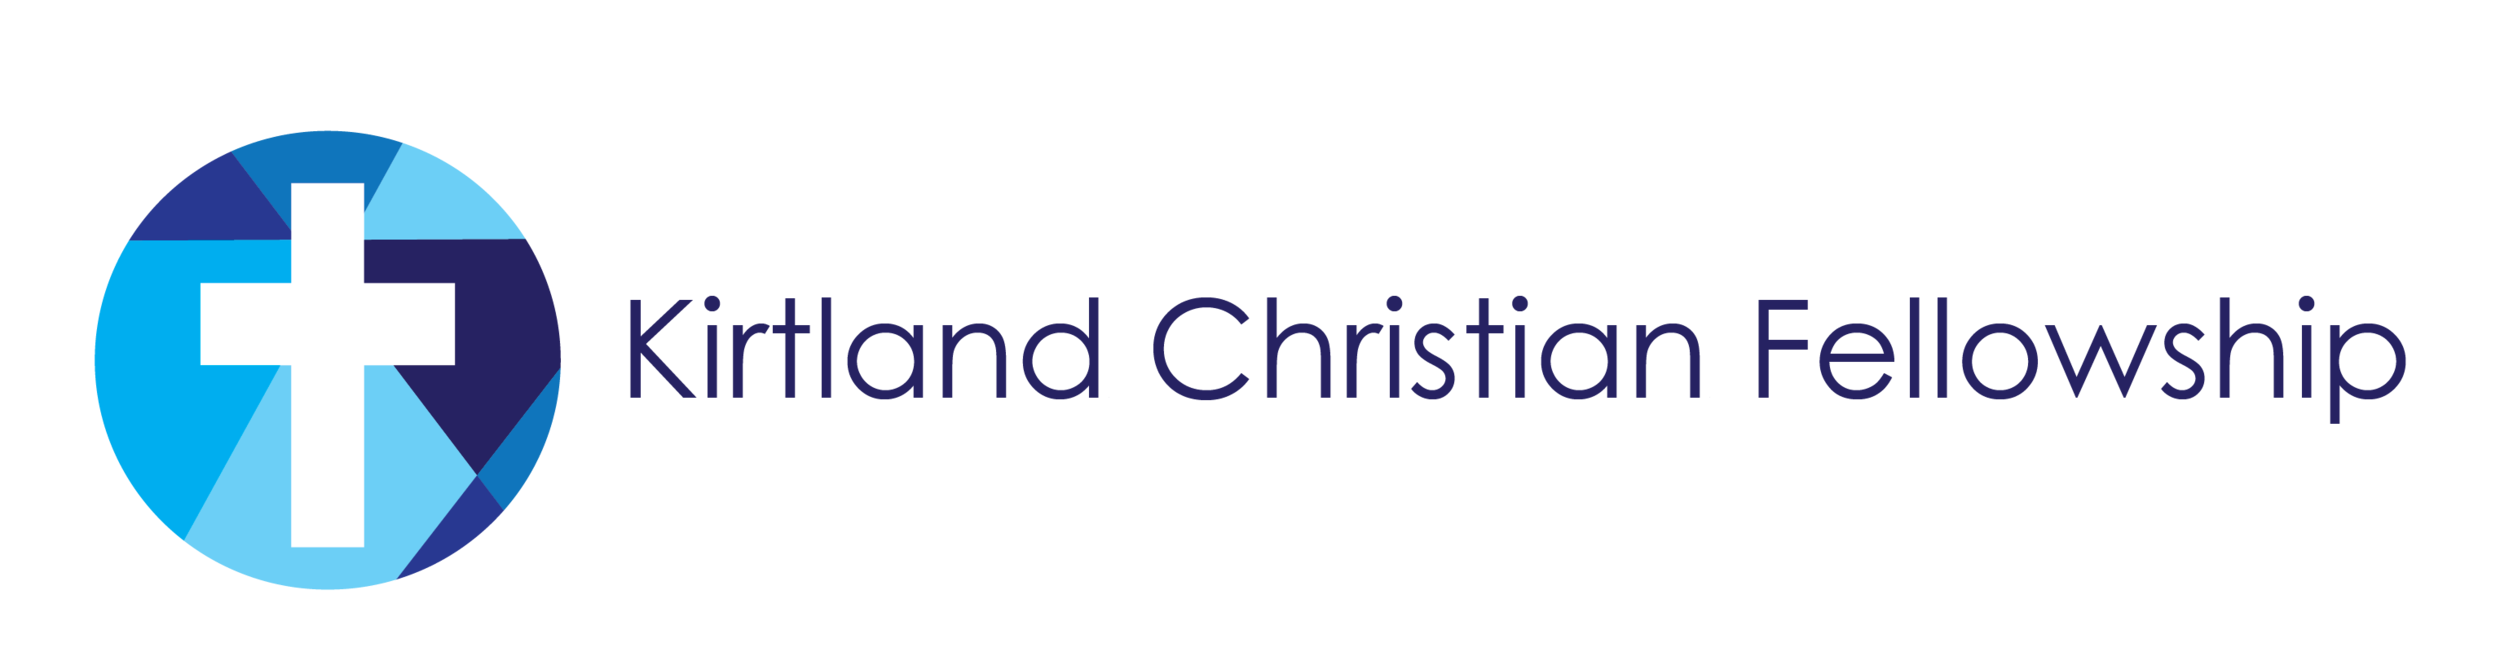 Kirtland Christian Fellowship